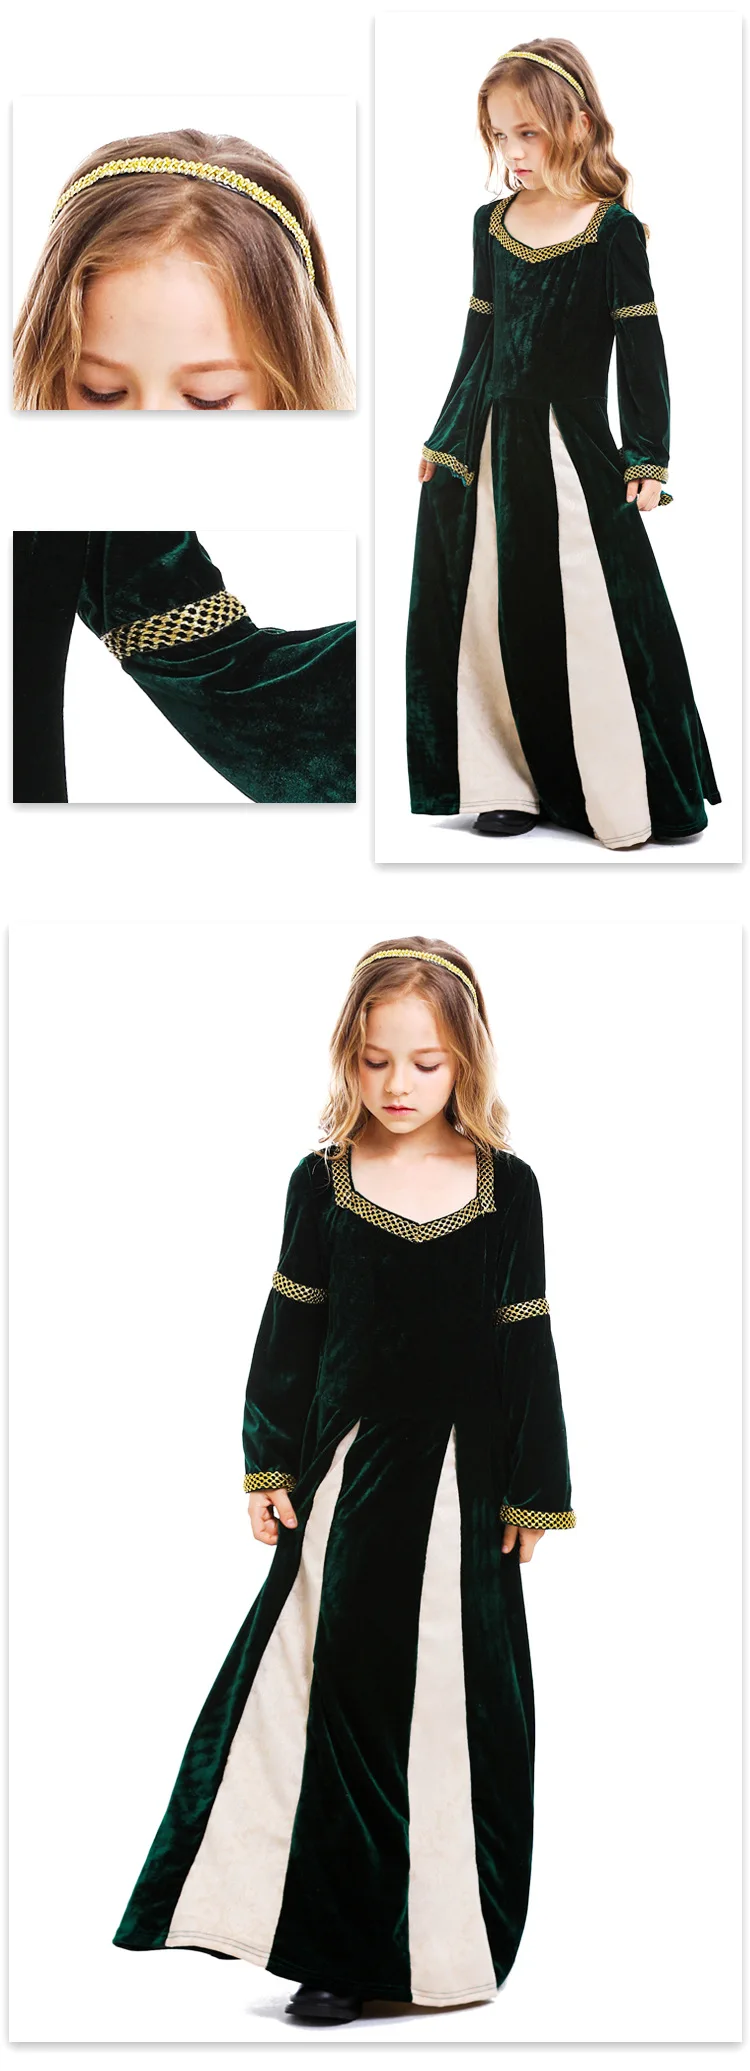 Детский карнавальный костюм на Хэллоуин; костюм вампира для девочек; платье для девочек в средневековом стиле; вечерние костюмы для детей